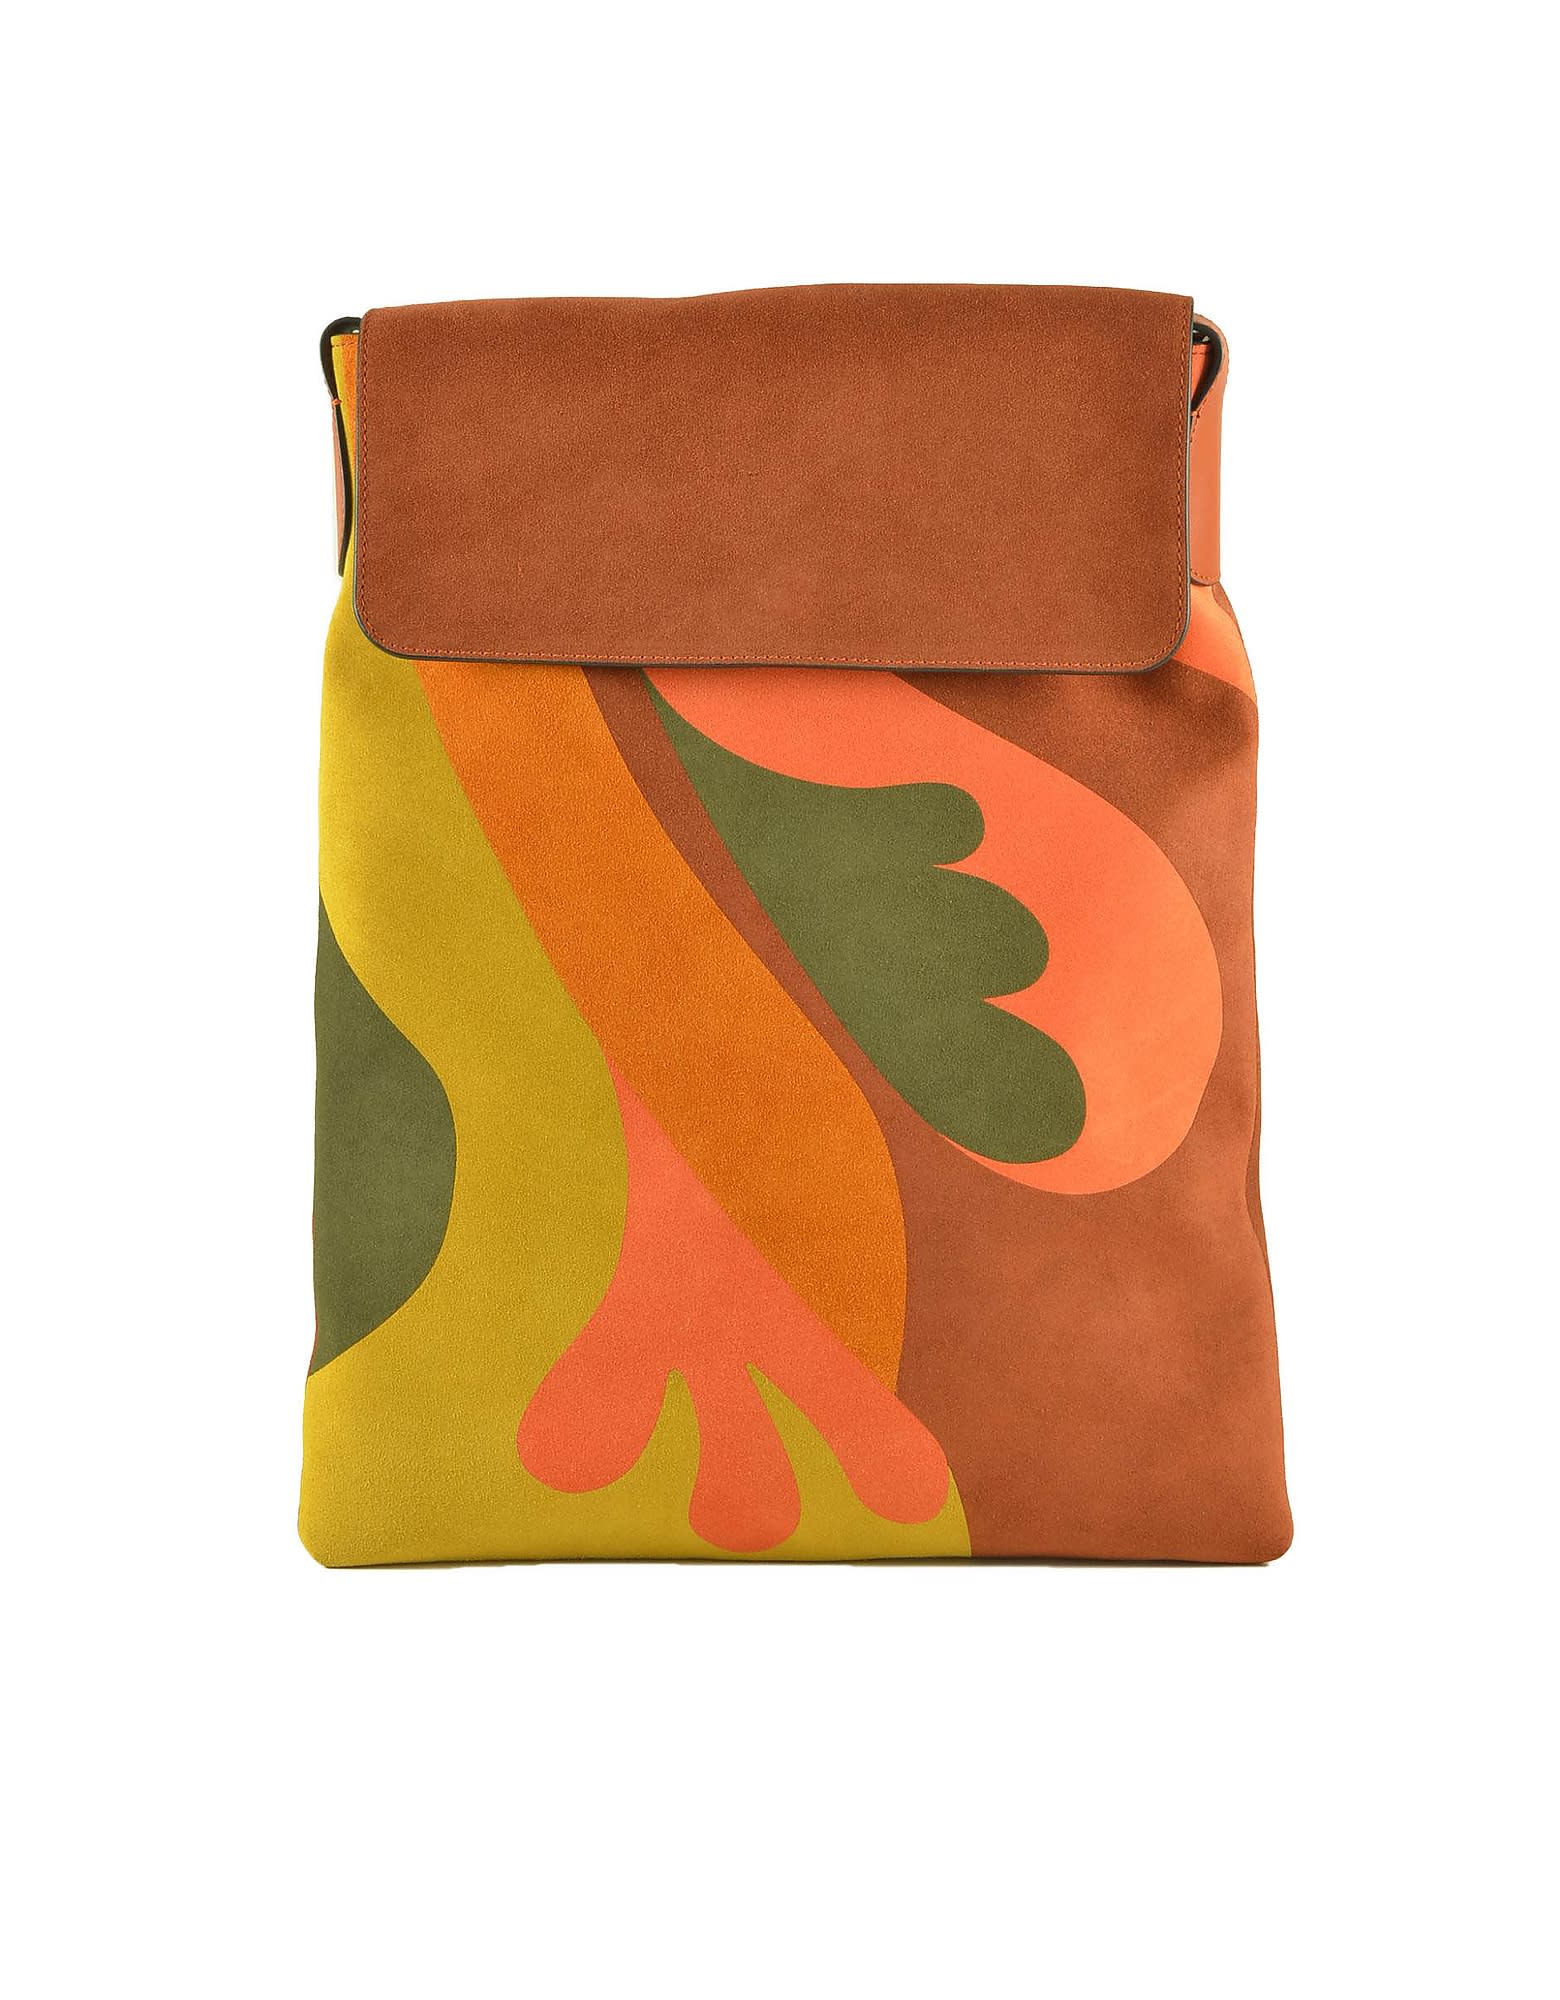 Alberta Ferretti Womens Multicolor Handbag